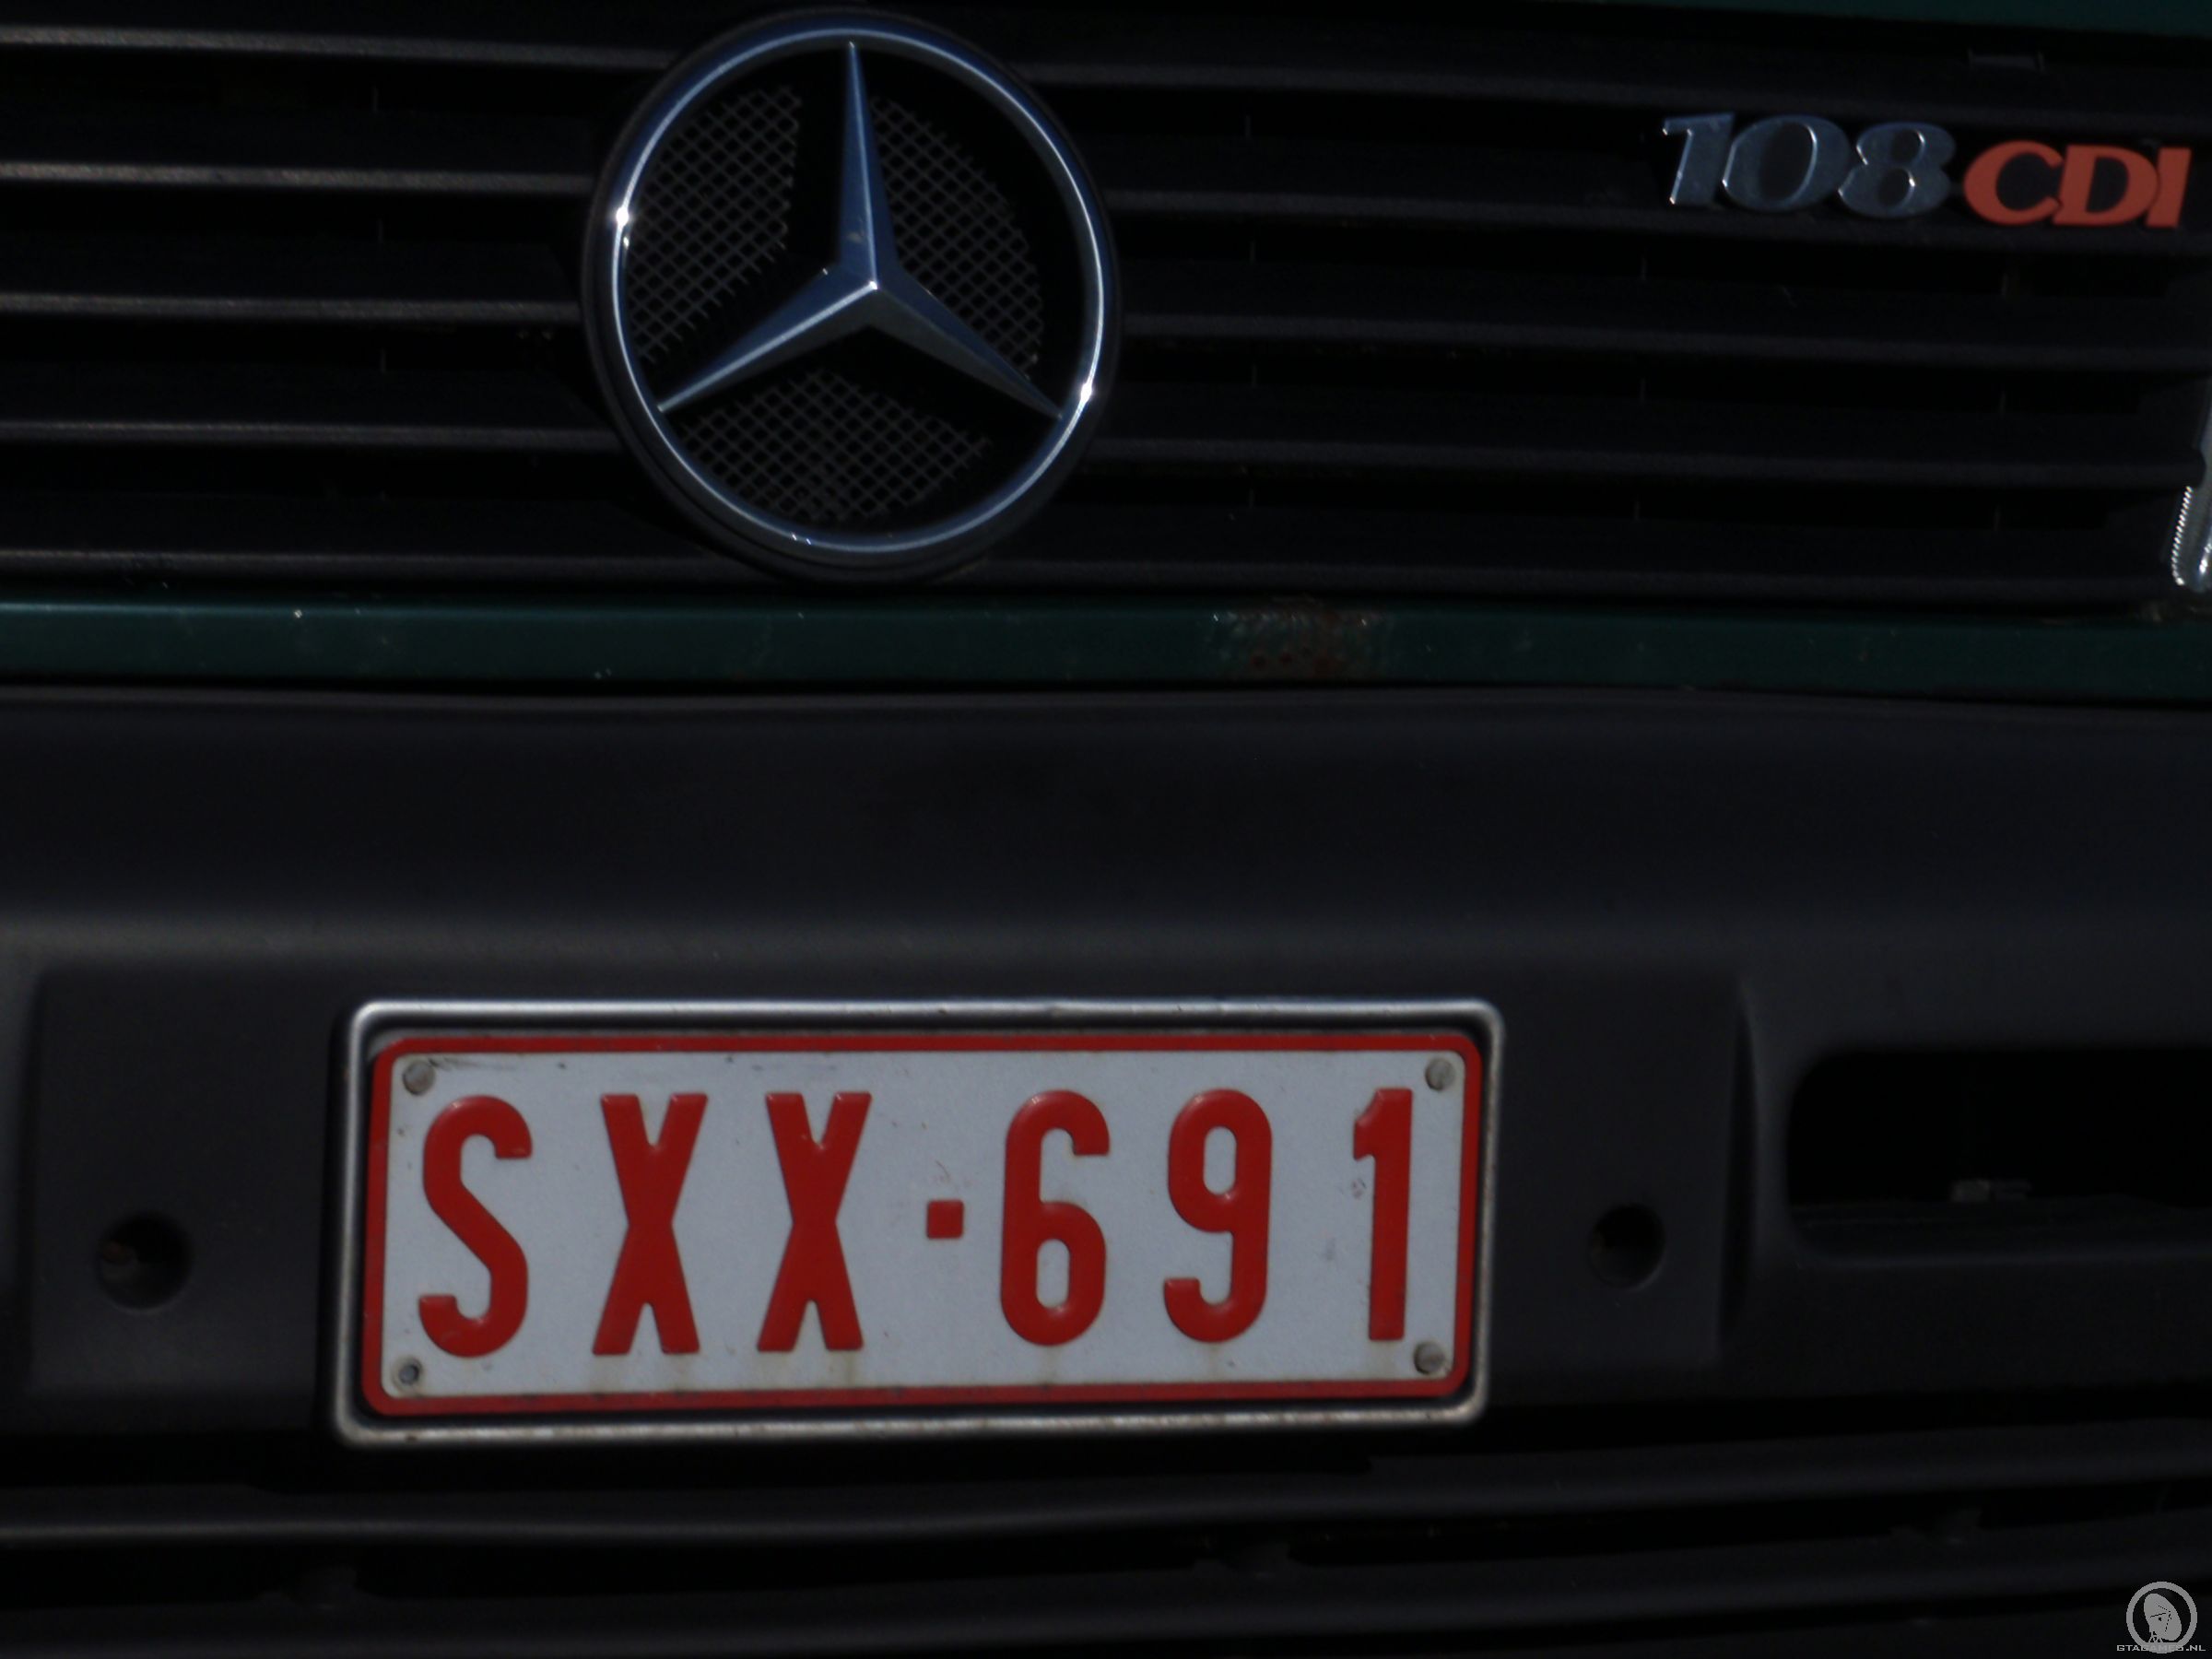 SXX 691